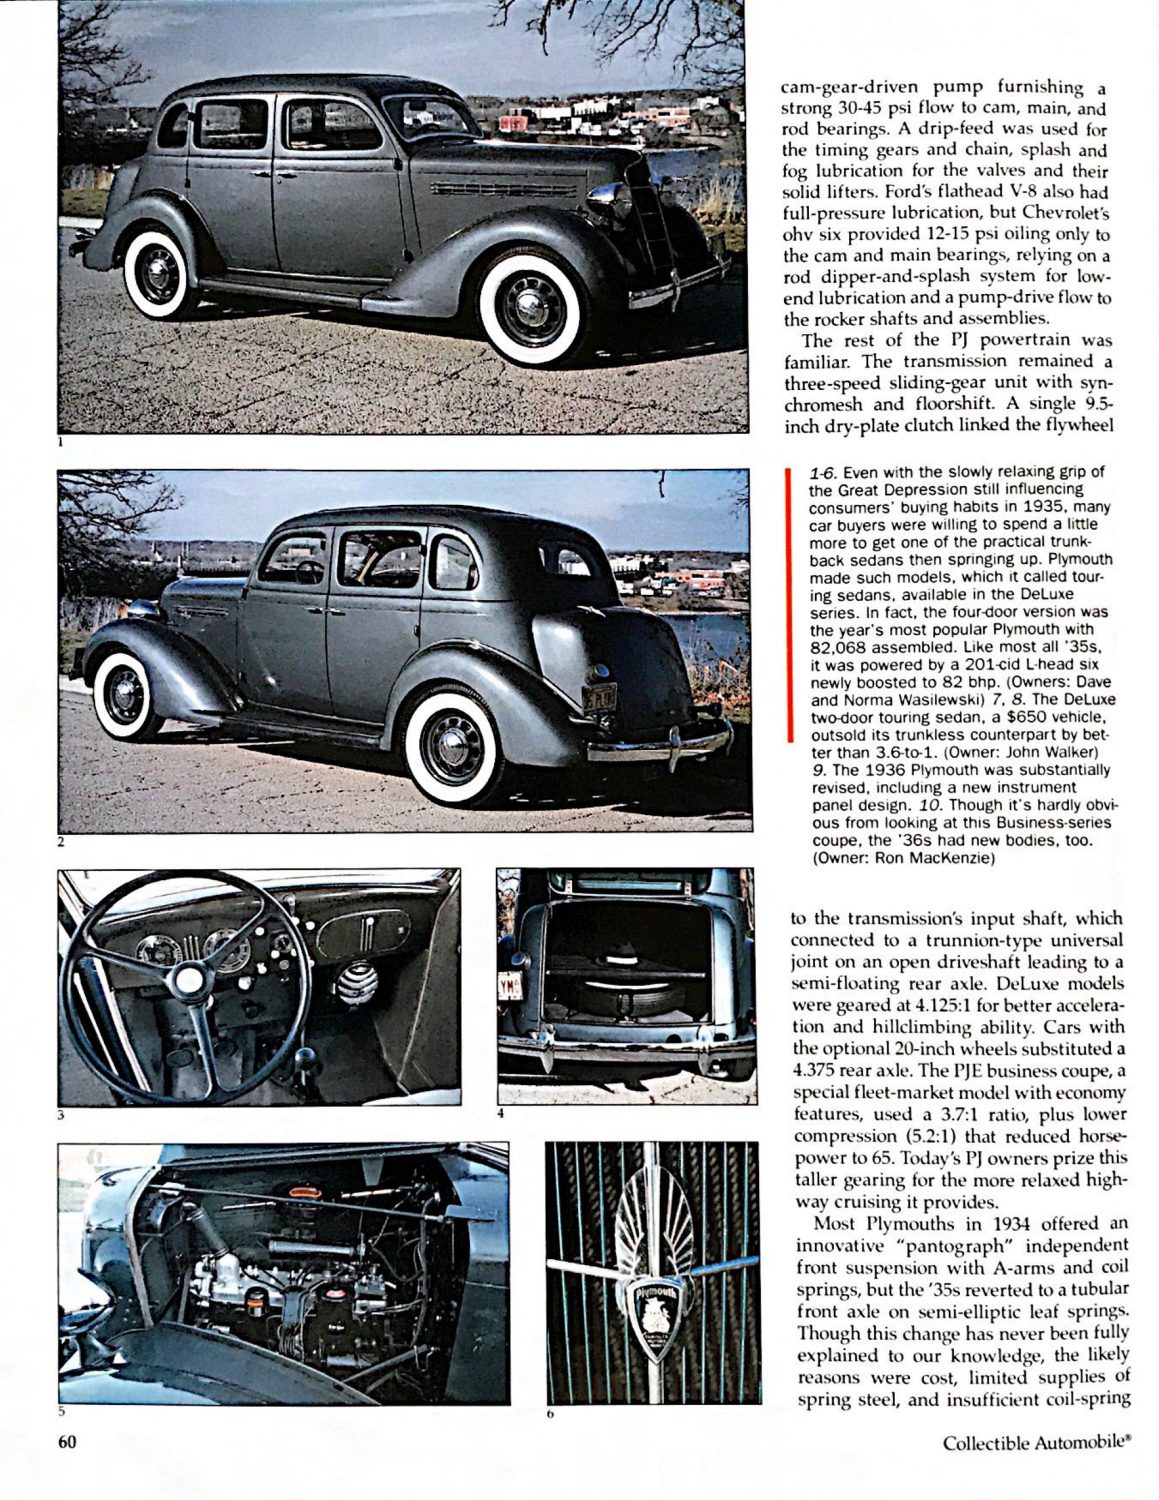 žurnale „Collectible Automobile“ (Kolekciniai automobiliai) pasirodęs žurnalisto Jim Leman straipsnis apie 1936 ir 1936 m. laidų ,,Plymouth“ automobilius